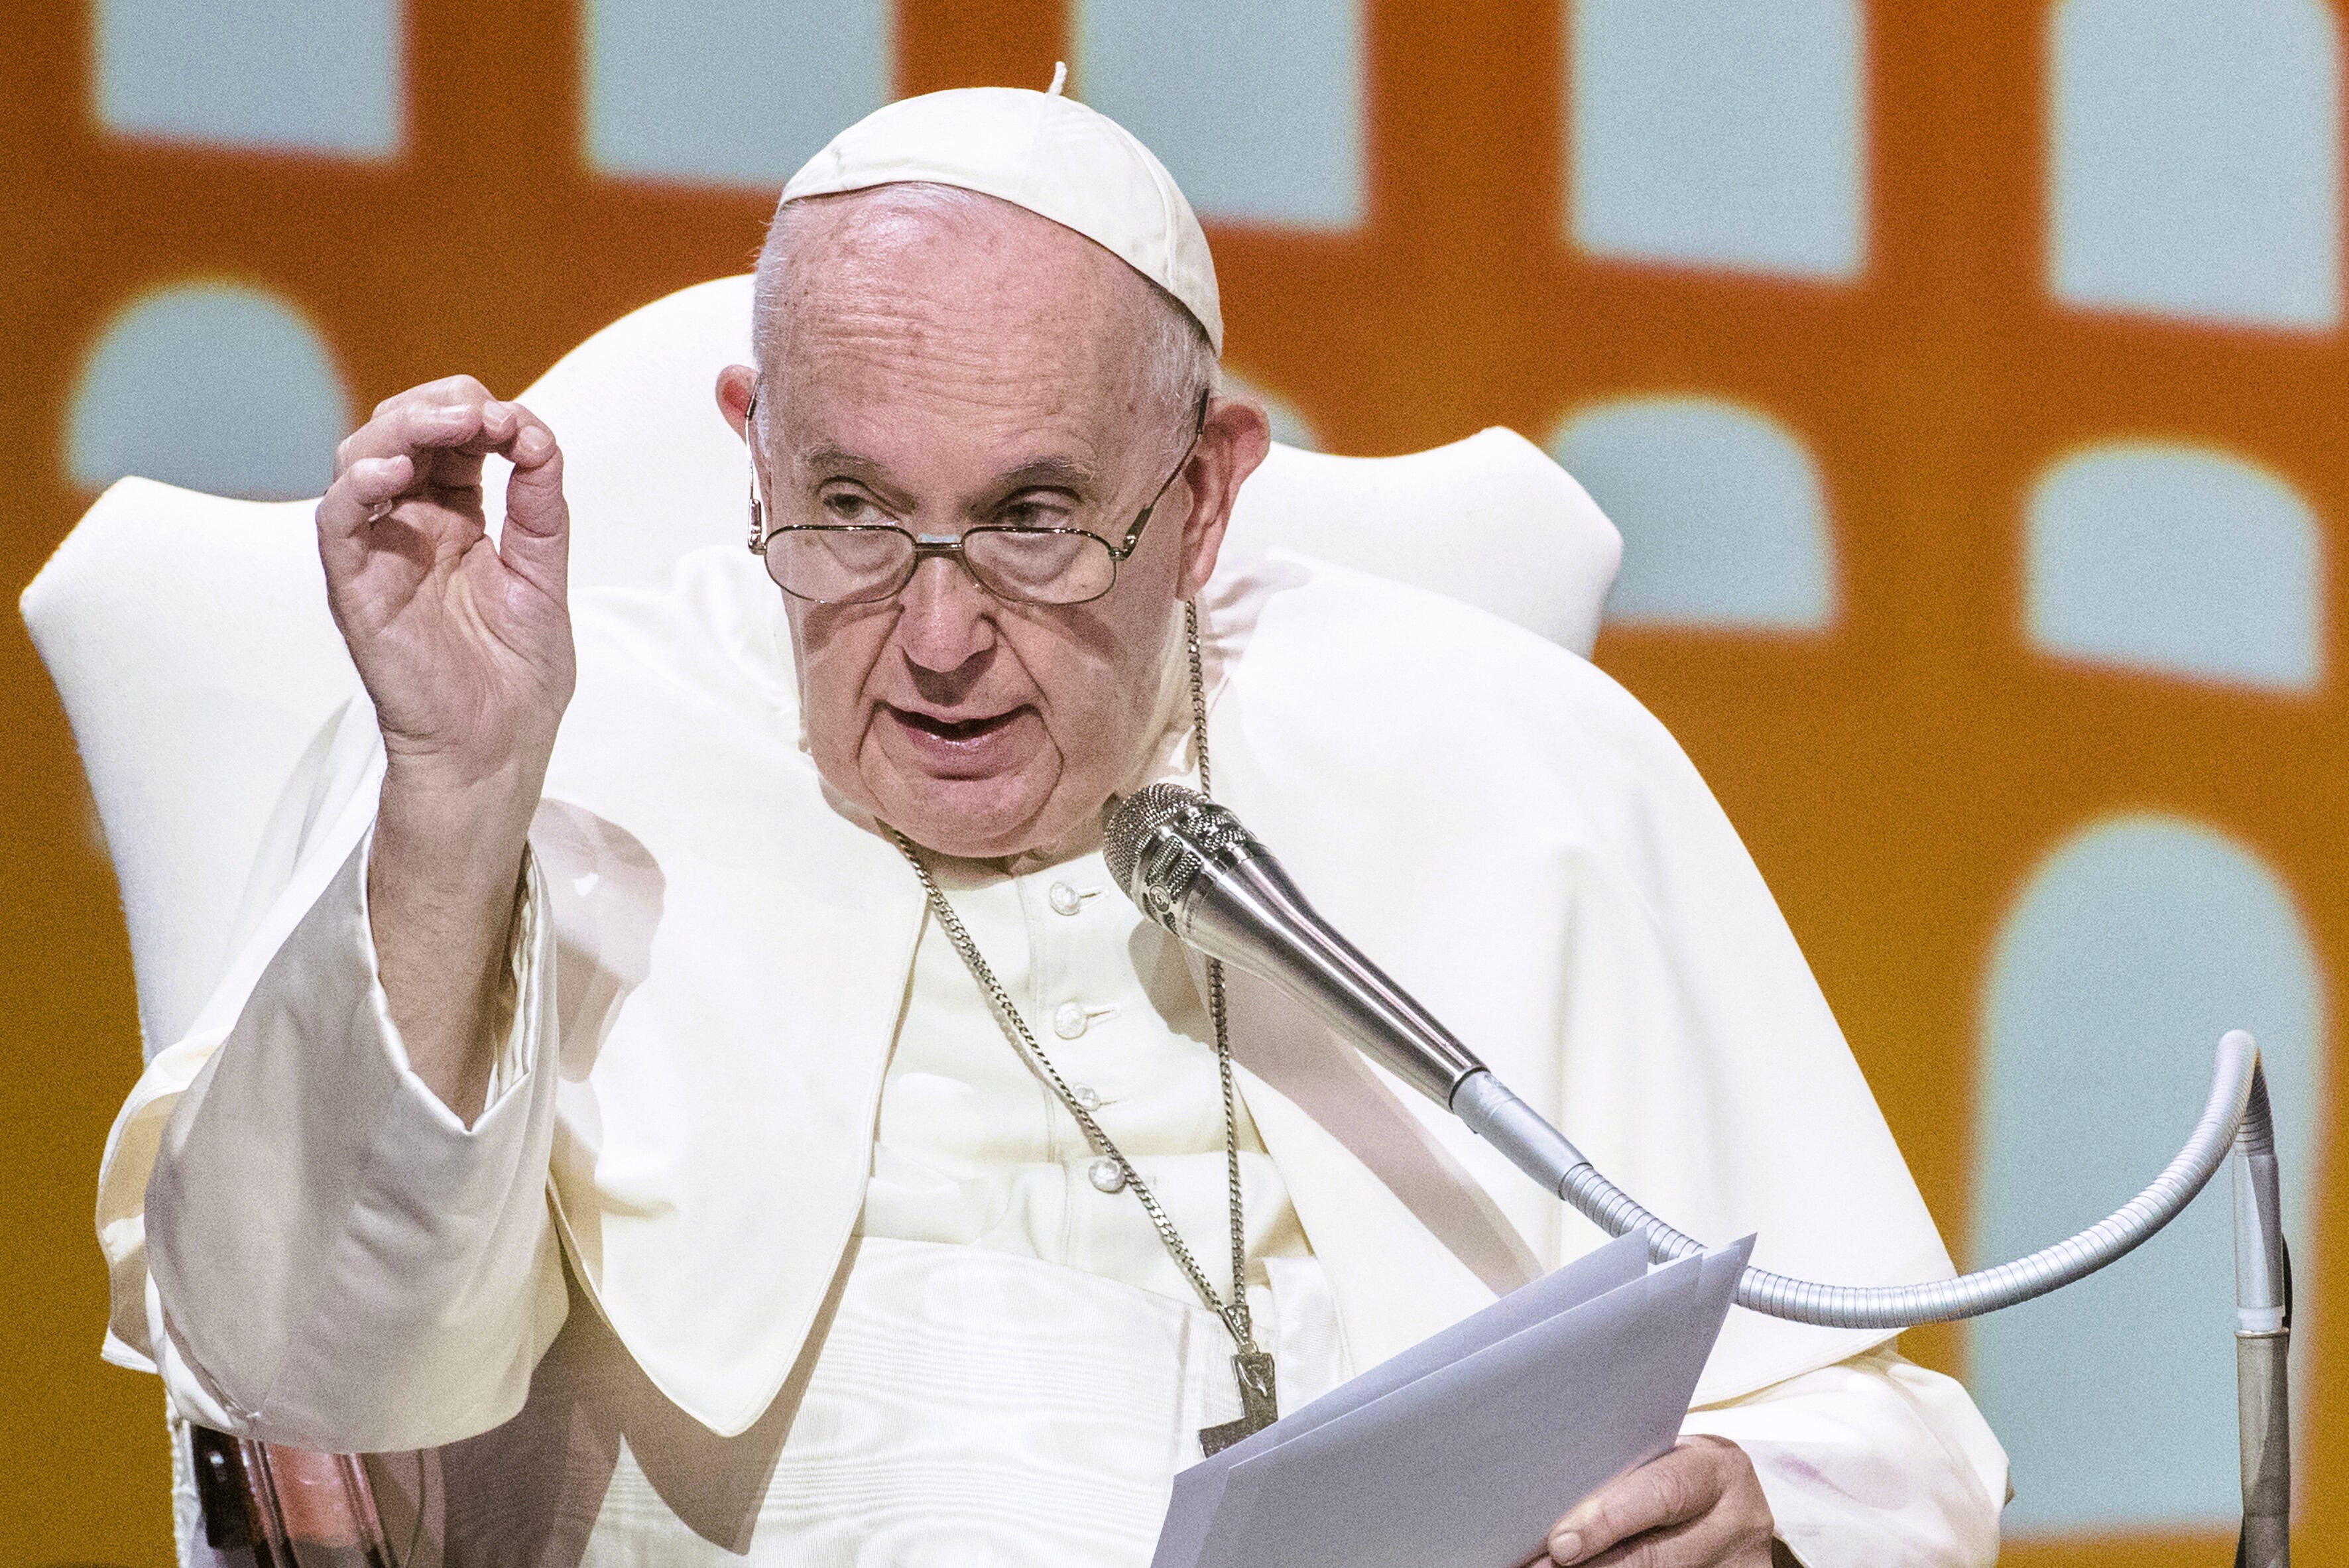 Eilmeldung! Sorge um Papst Franziskus immer größer - ausgerechnet vor Ostern! Wie krank ist der 87-Jährige wirklich? 